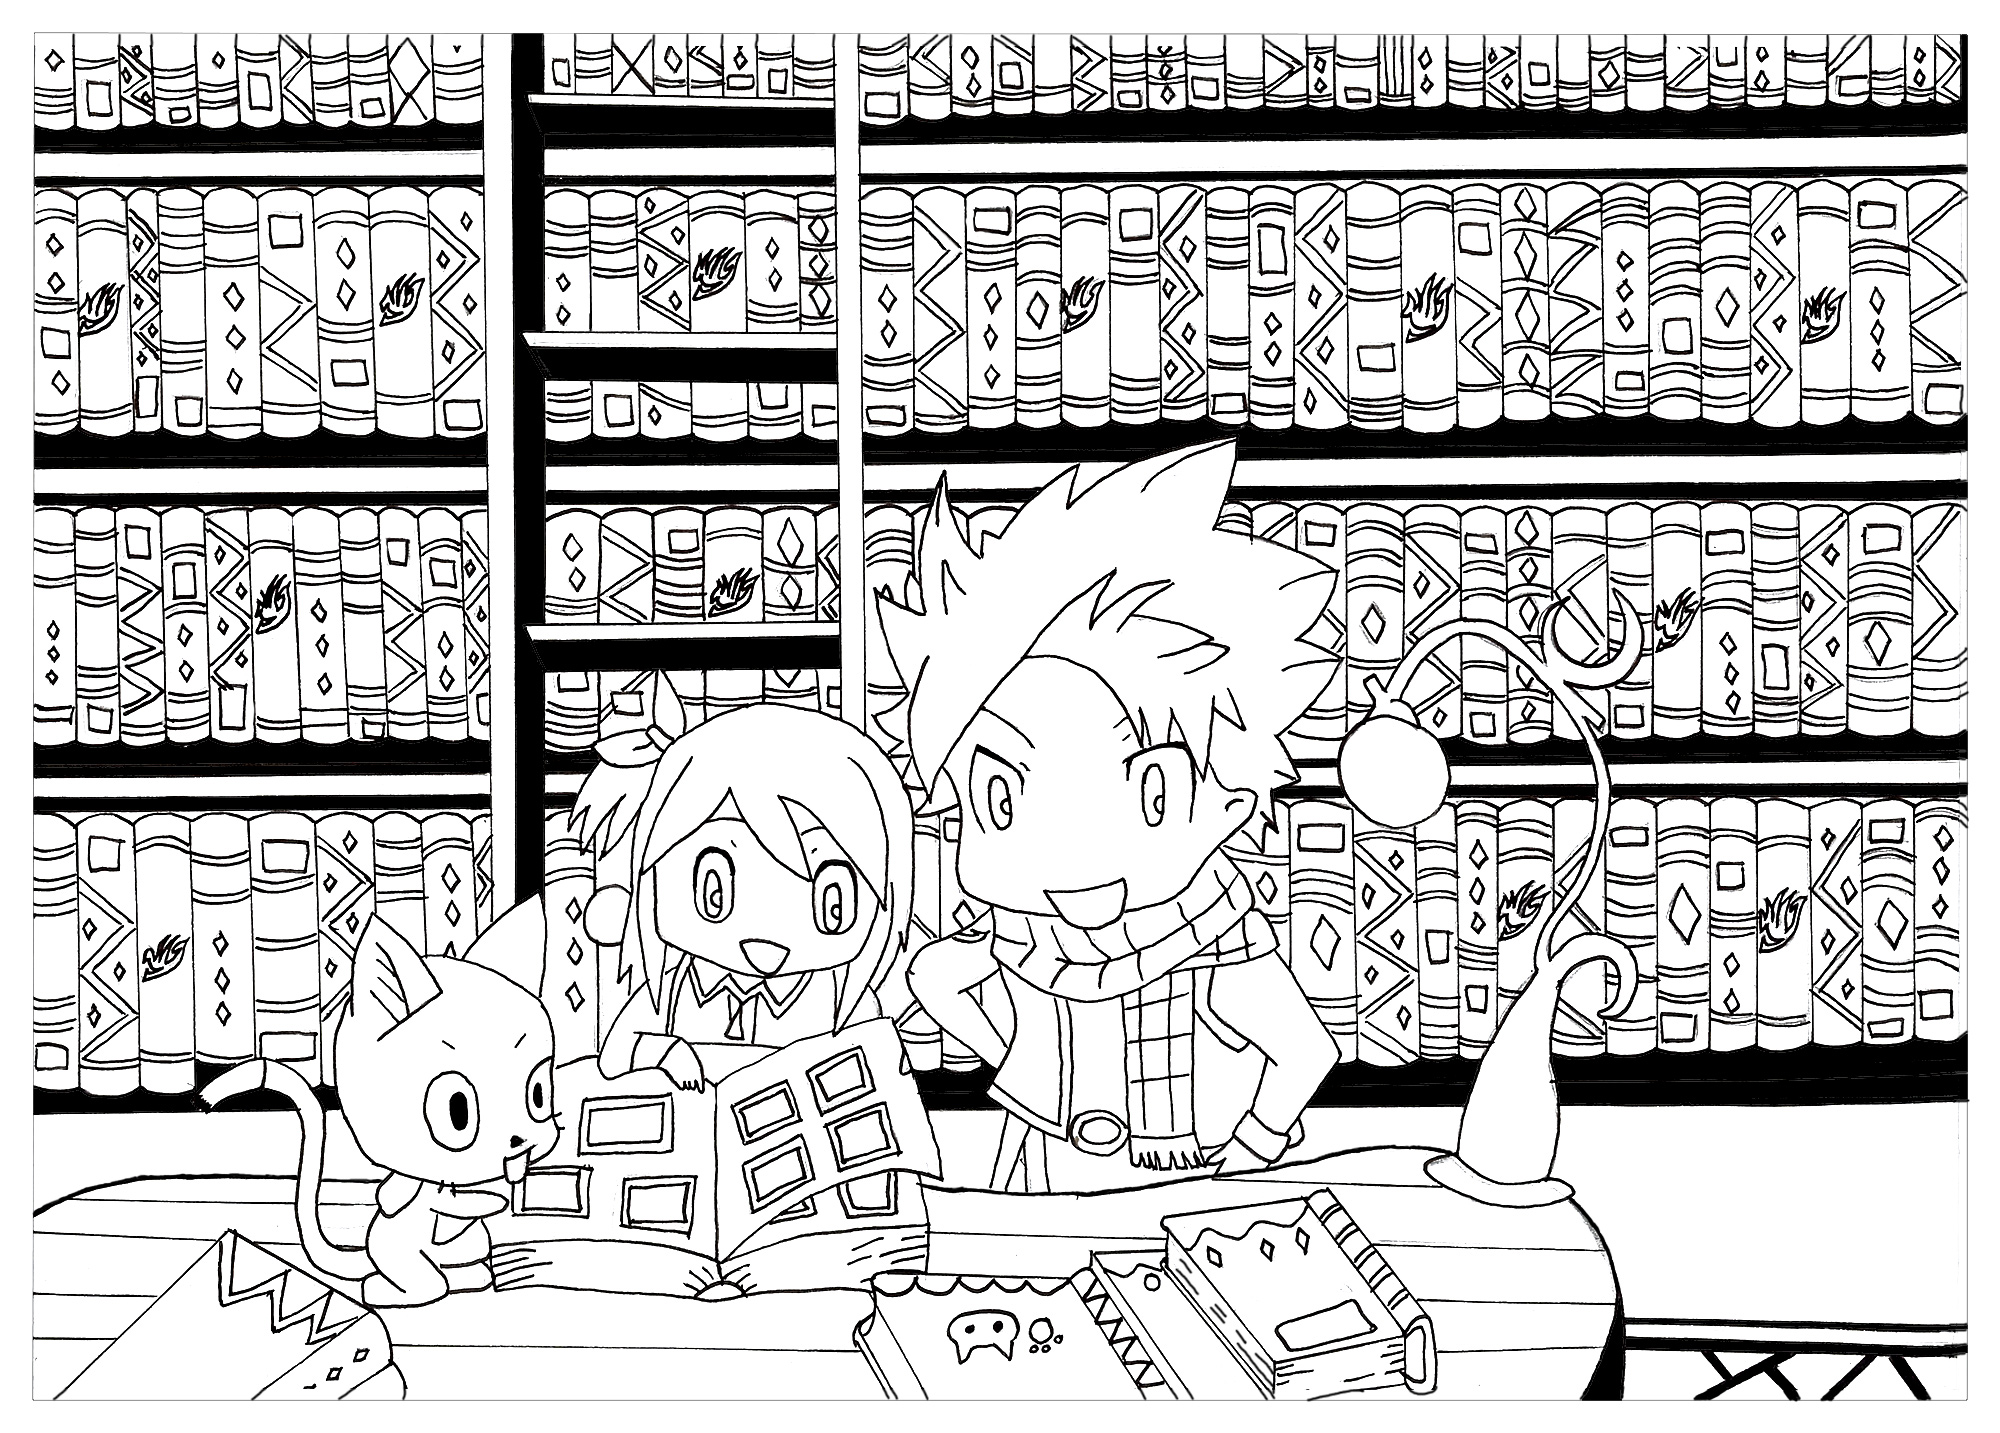 Ceci est un coloriage de chibi avec les personnages de Fairy Tail Natsu Lucy et